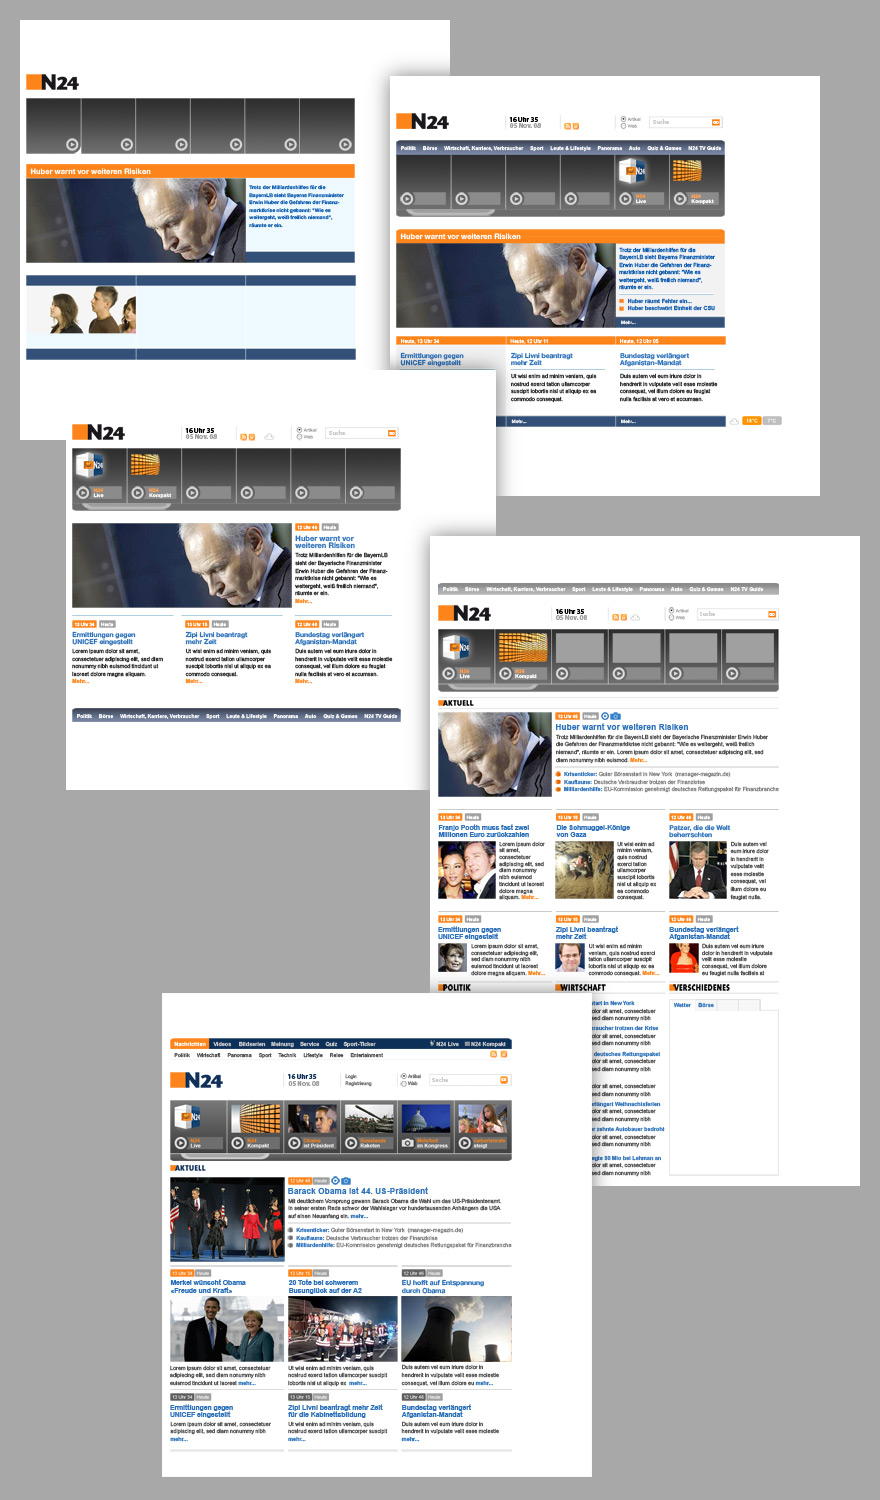 Diverse von okamo aus Berlin gestaltete Webdesign-Vorstudien der Homepage des Nachrichtensenders N24, die im Rahmen einer Pitch-Präsentation zum geplanten Relaunch 2008 von okamo präsentiert wurden. okamo geht als Favorit aus dem Pitch hervor, es kommt aber auf Grund von sich ändernden Eigentümerverhältnissen bei N24 nie zu einer Beauftragung zur Umsetzung des Designs